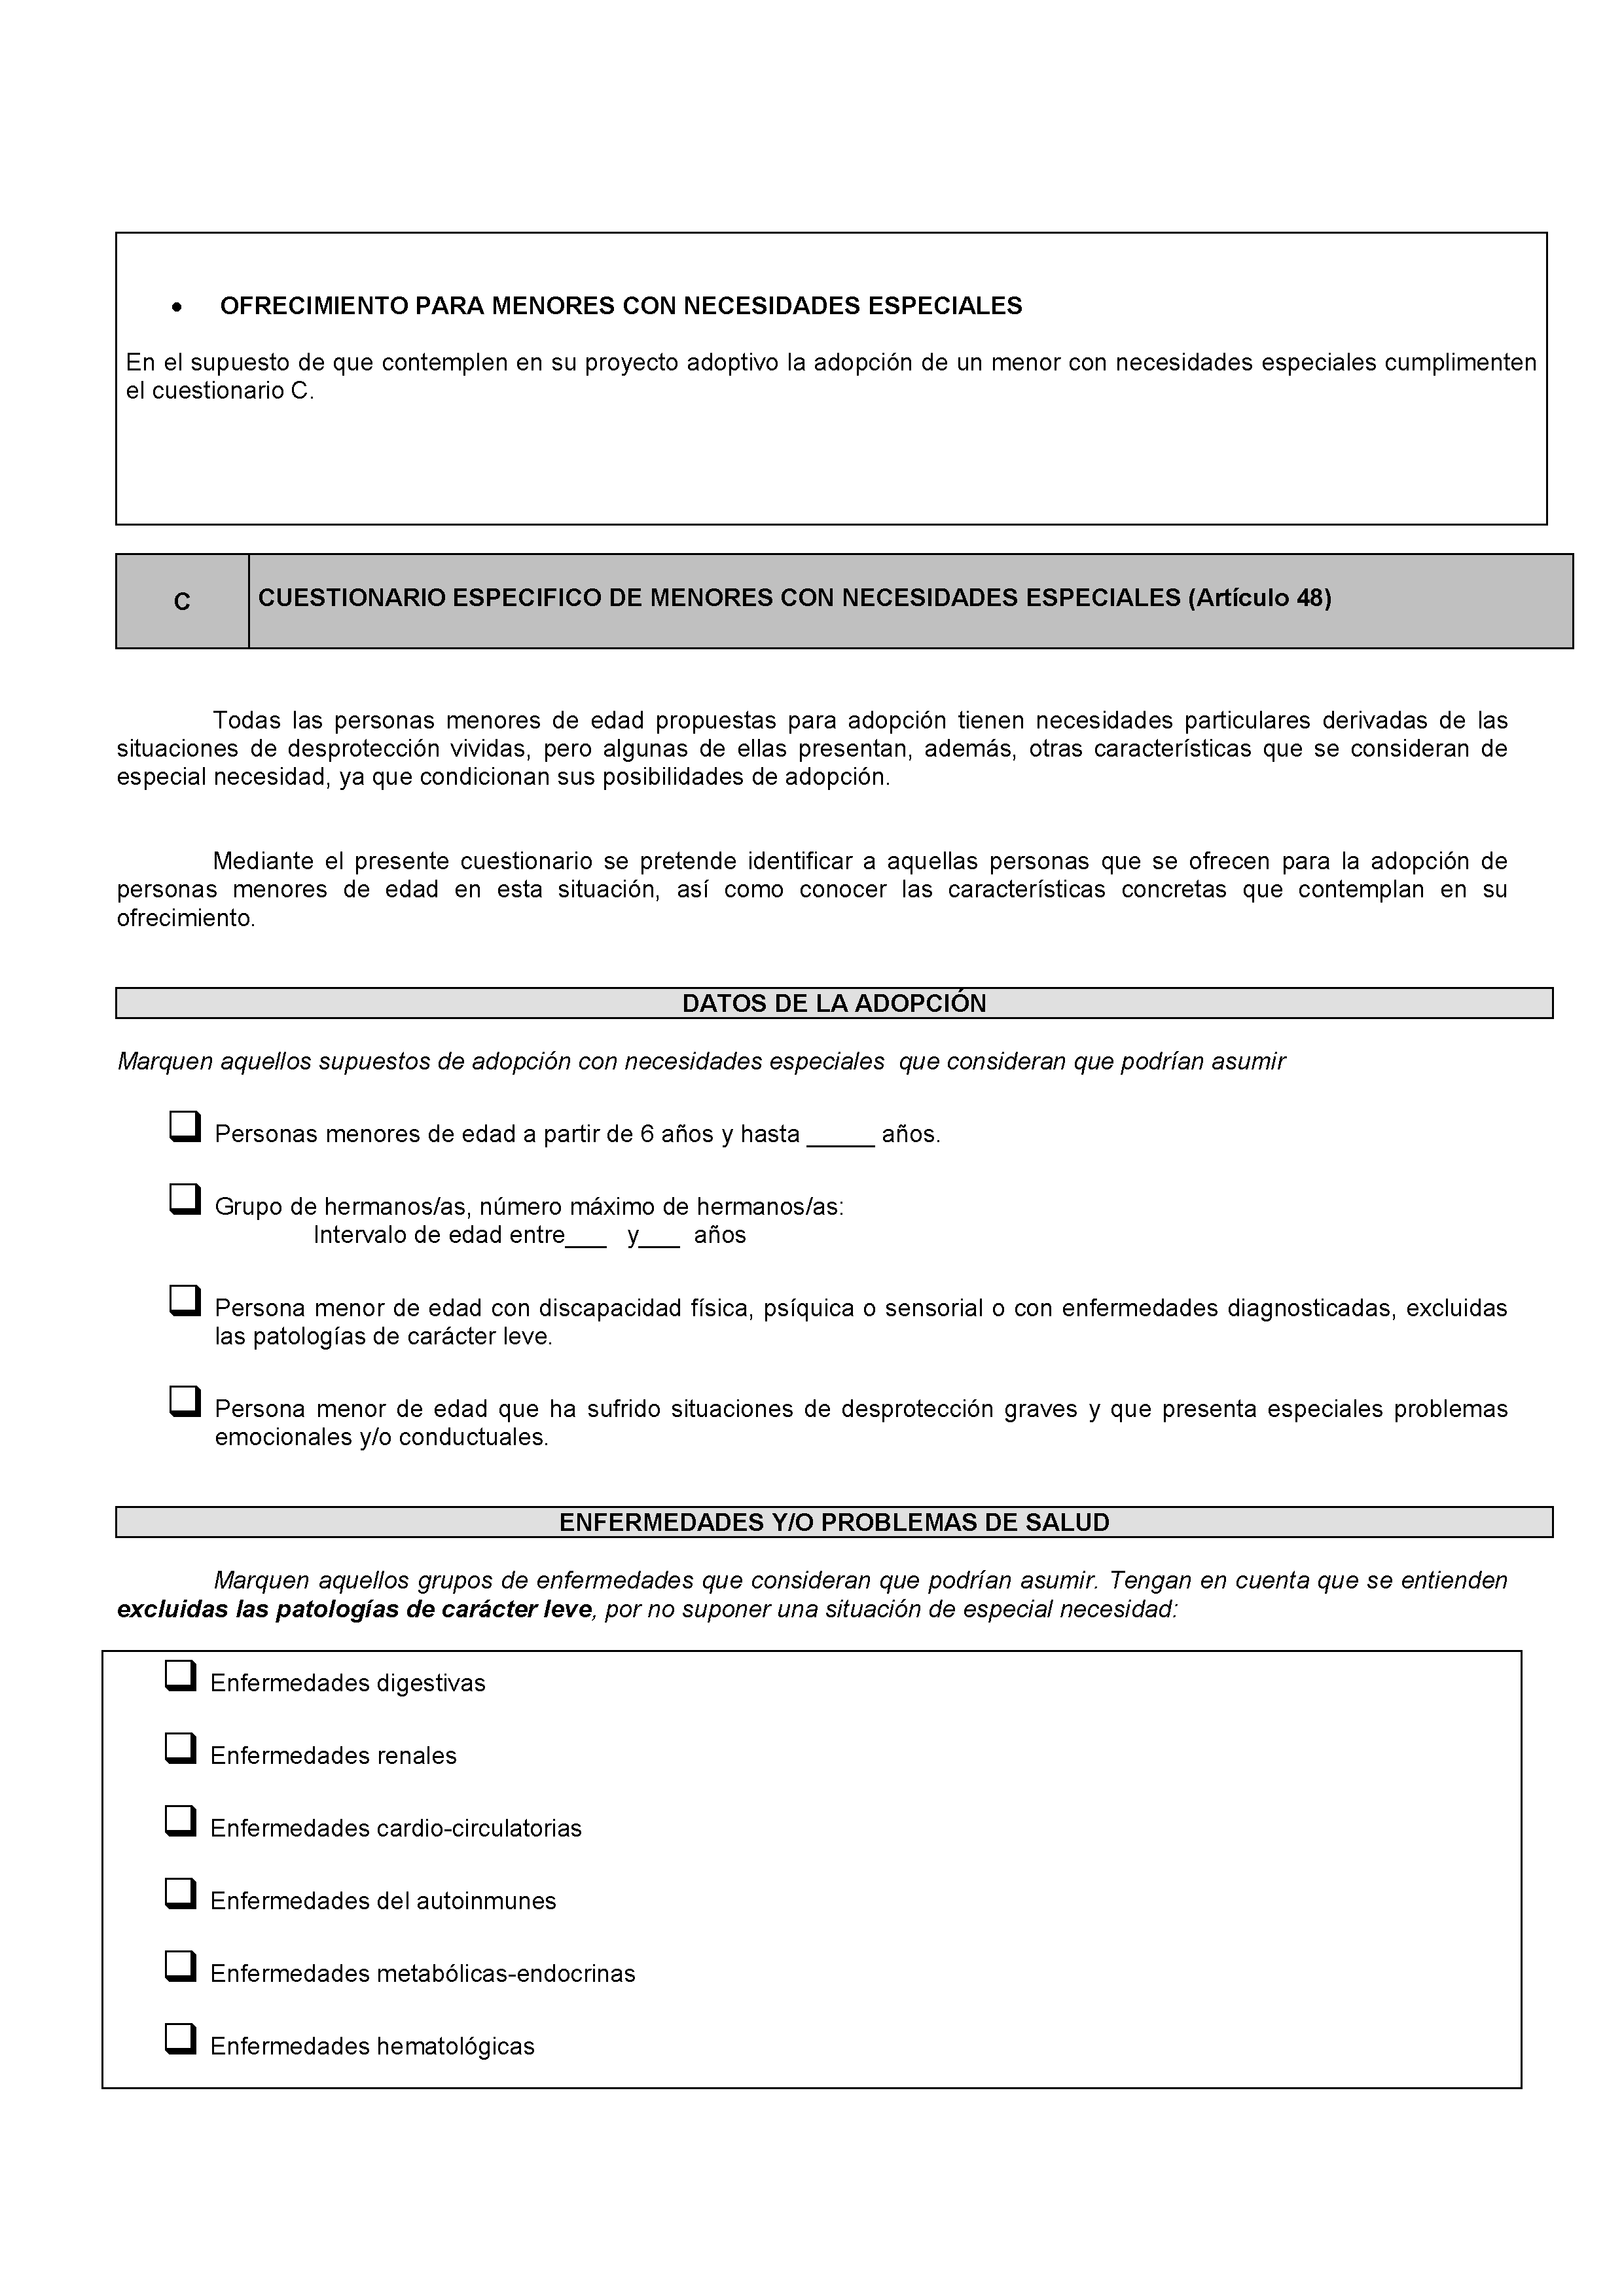 ANEXOS - SOLICITUD DE SESIONES INFORMATIVAS Pag 17